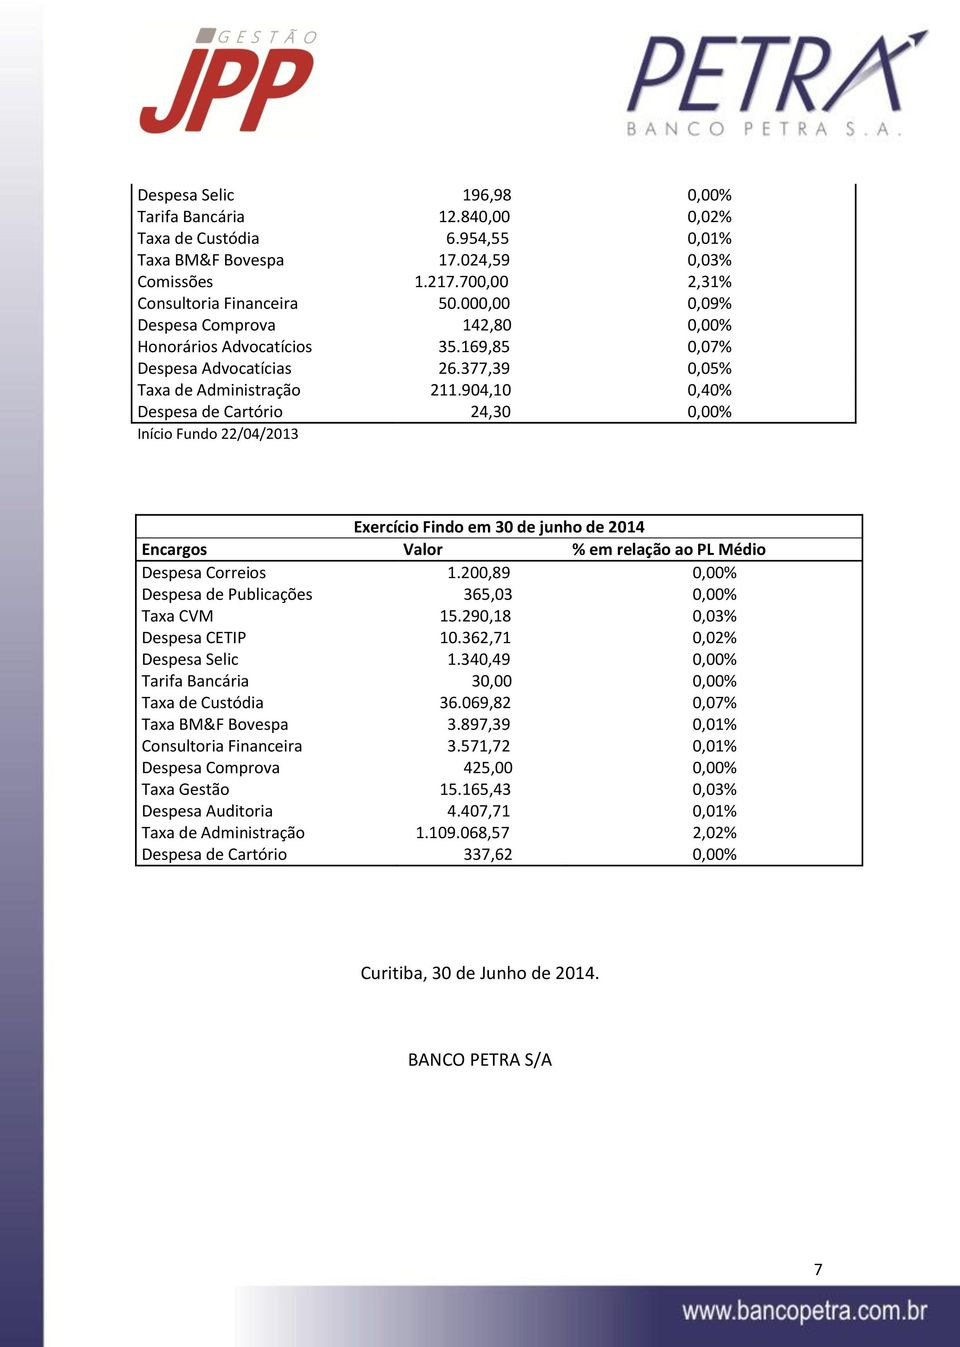 904,10 0,40% Despesa de Cartório 24,30 0,00% Início Fundo 22/04/2013 Exercício Findo em 30 de junho de 2014 Encargos Valor % em relação ao PL Médio Despesa Correios 1.